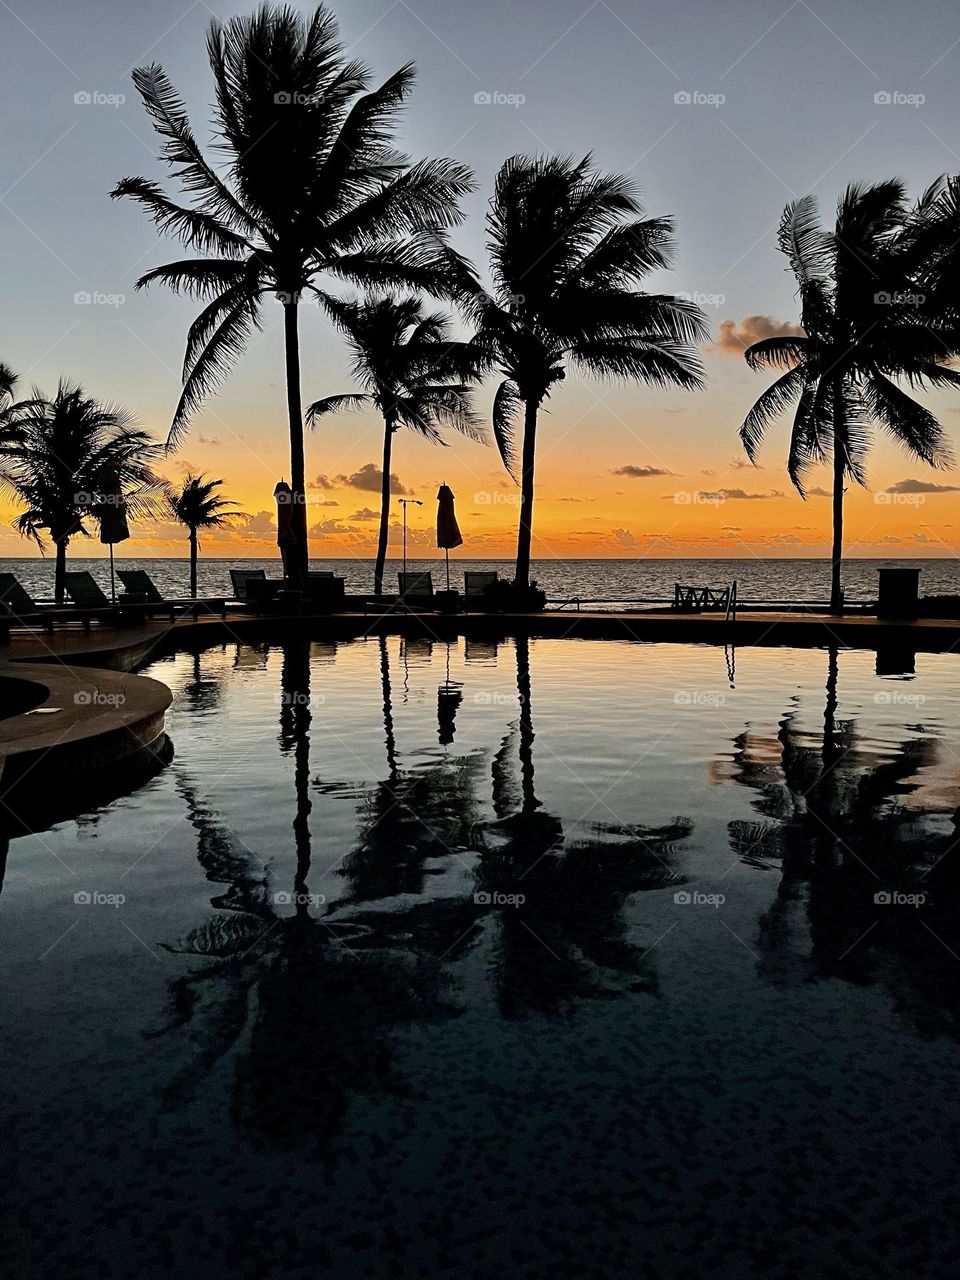 November sunrise in Cancun.